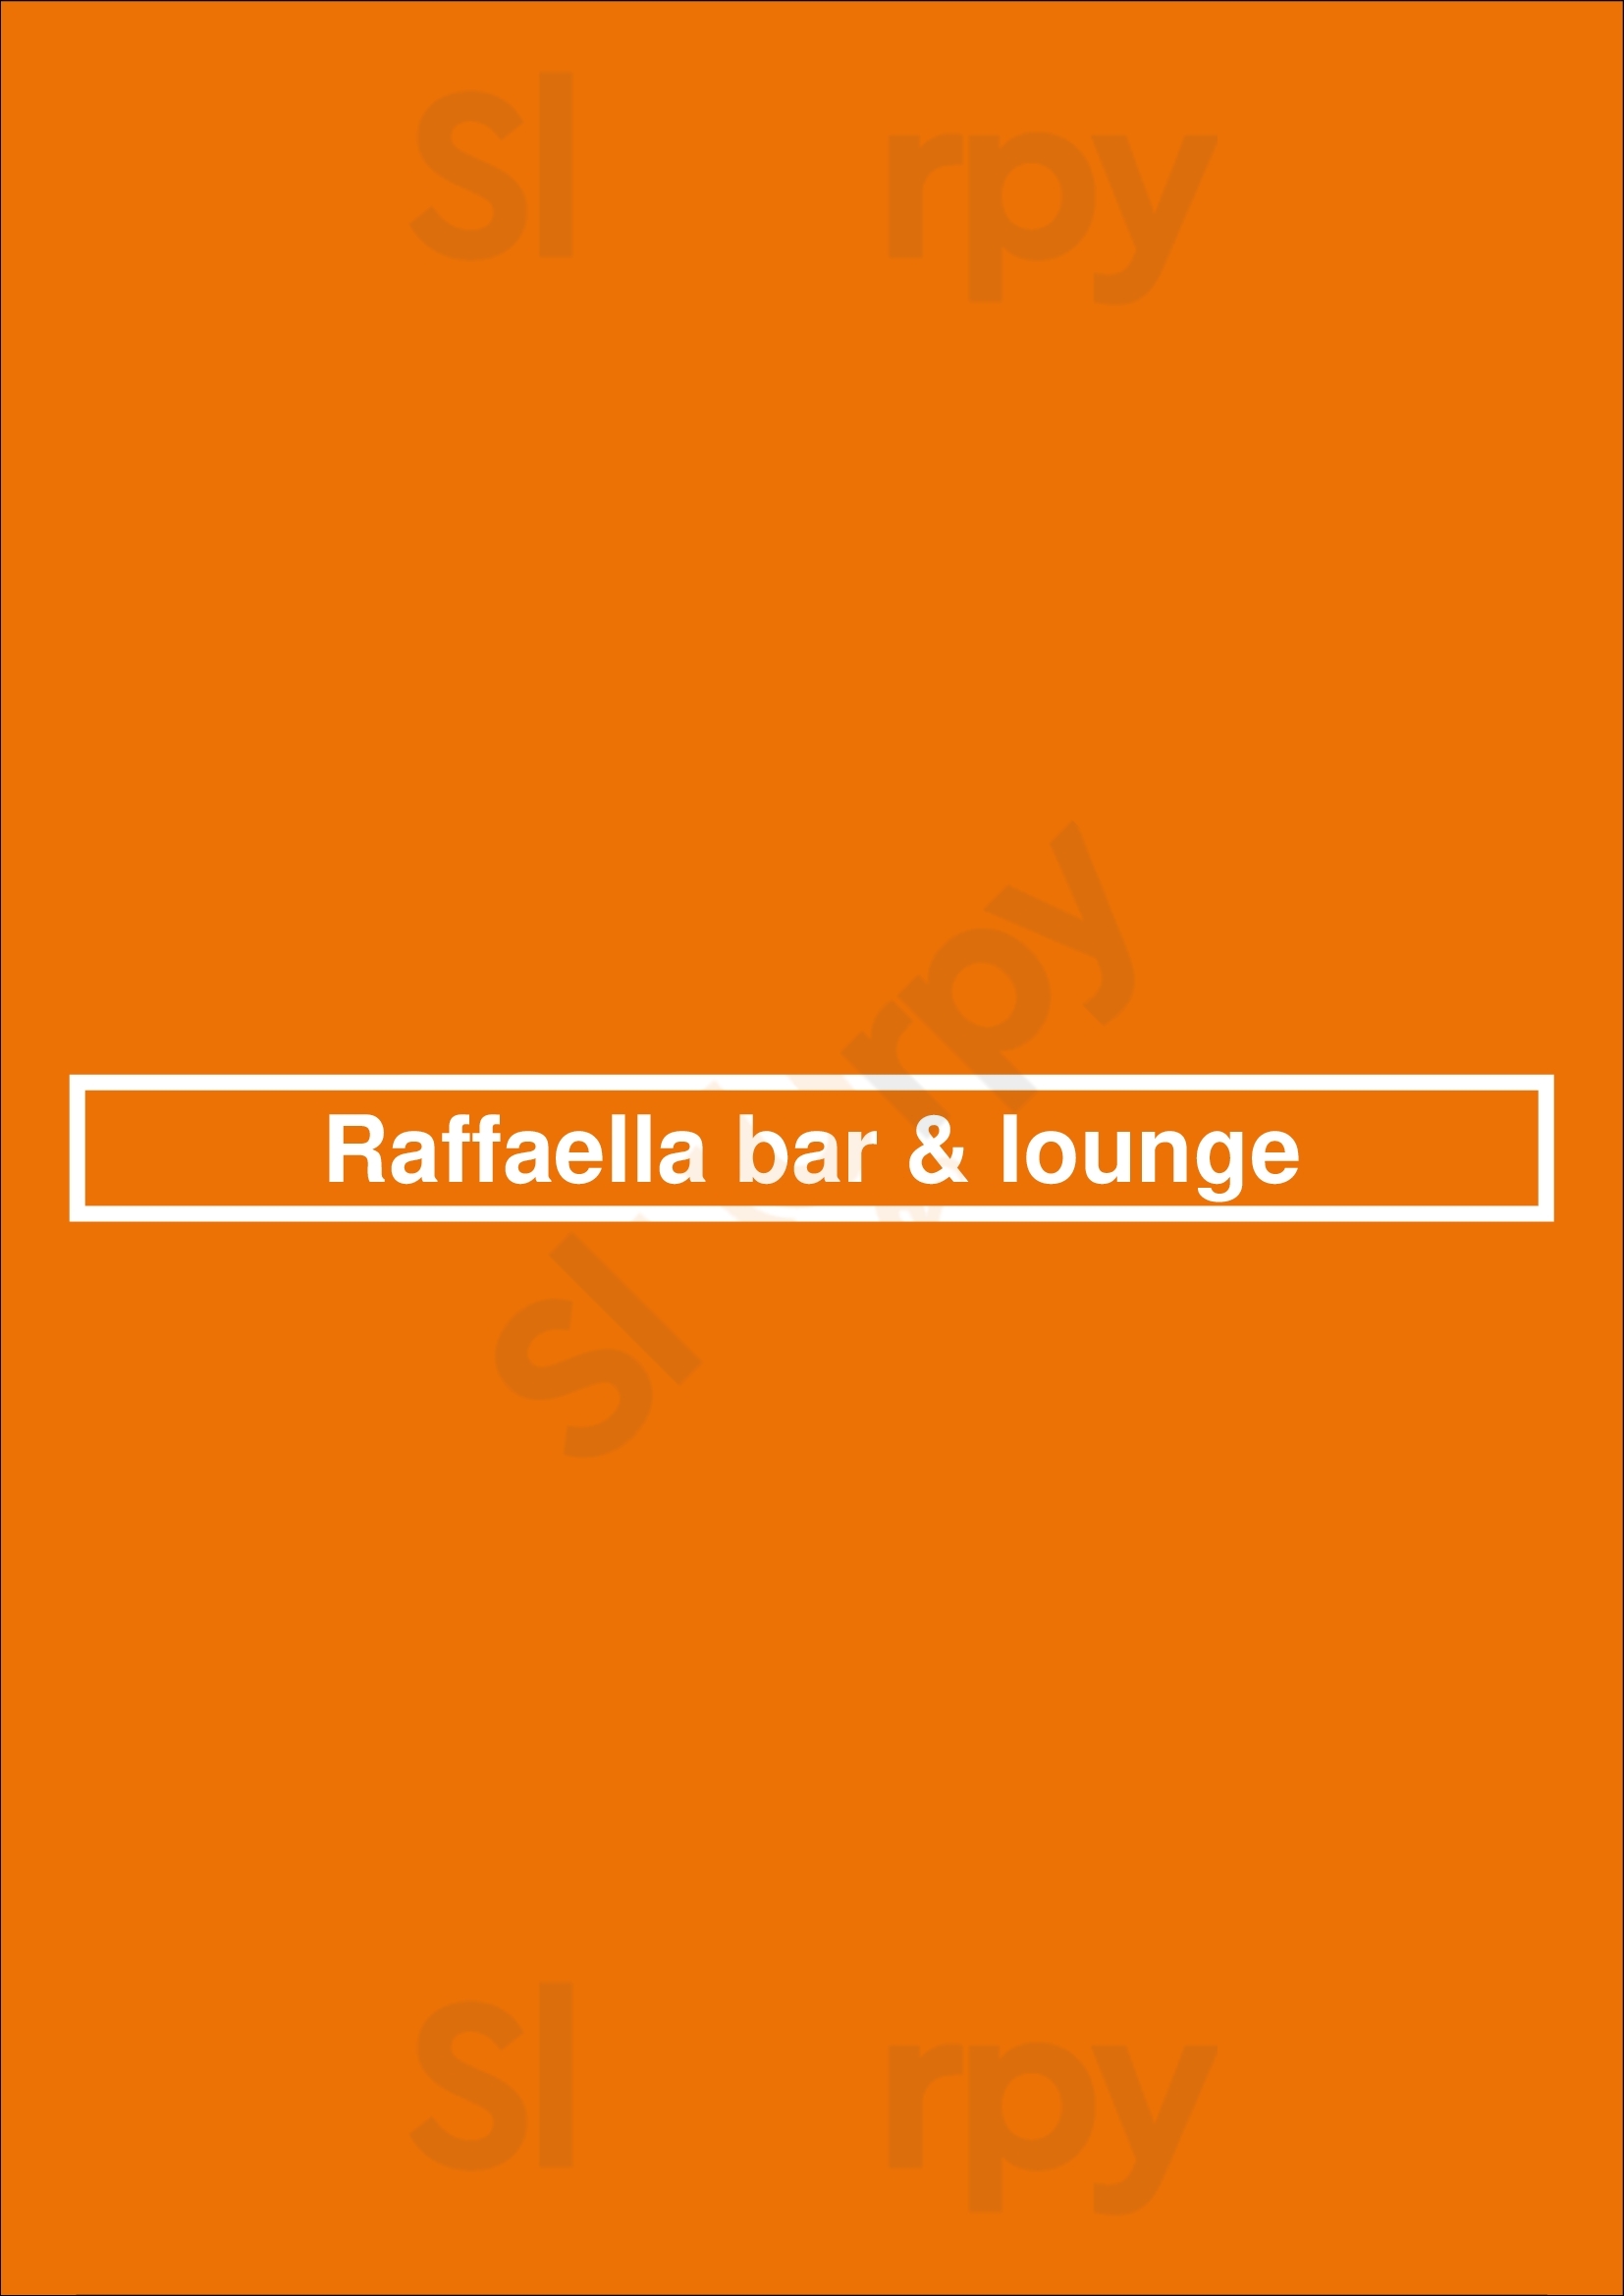 Raffaella Bar & Lounge Buenos Aires Menu - 1